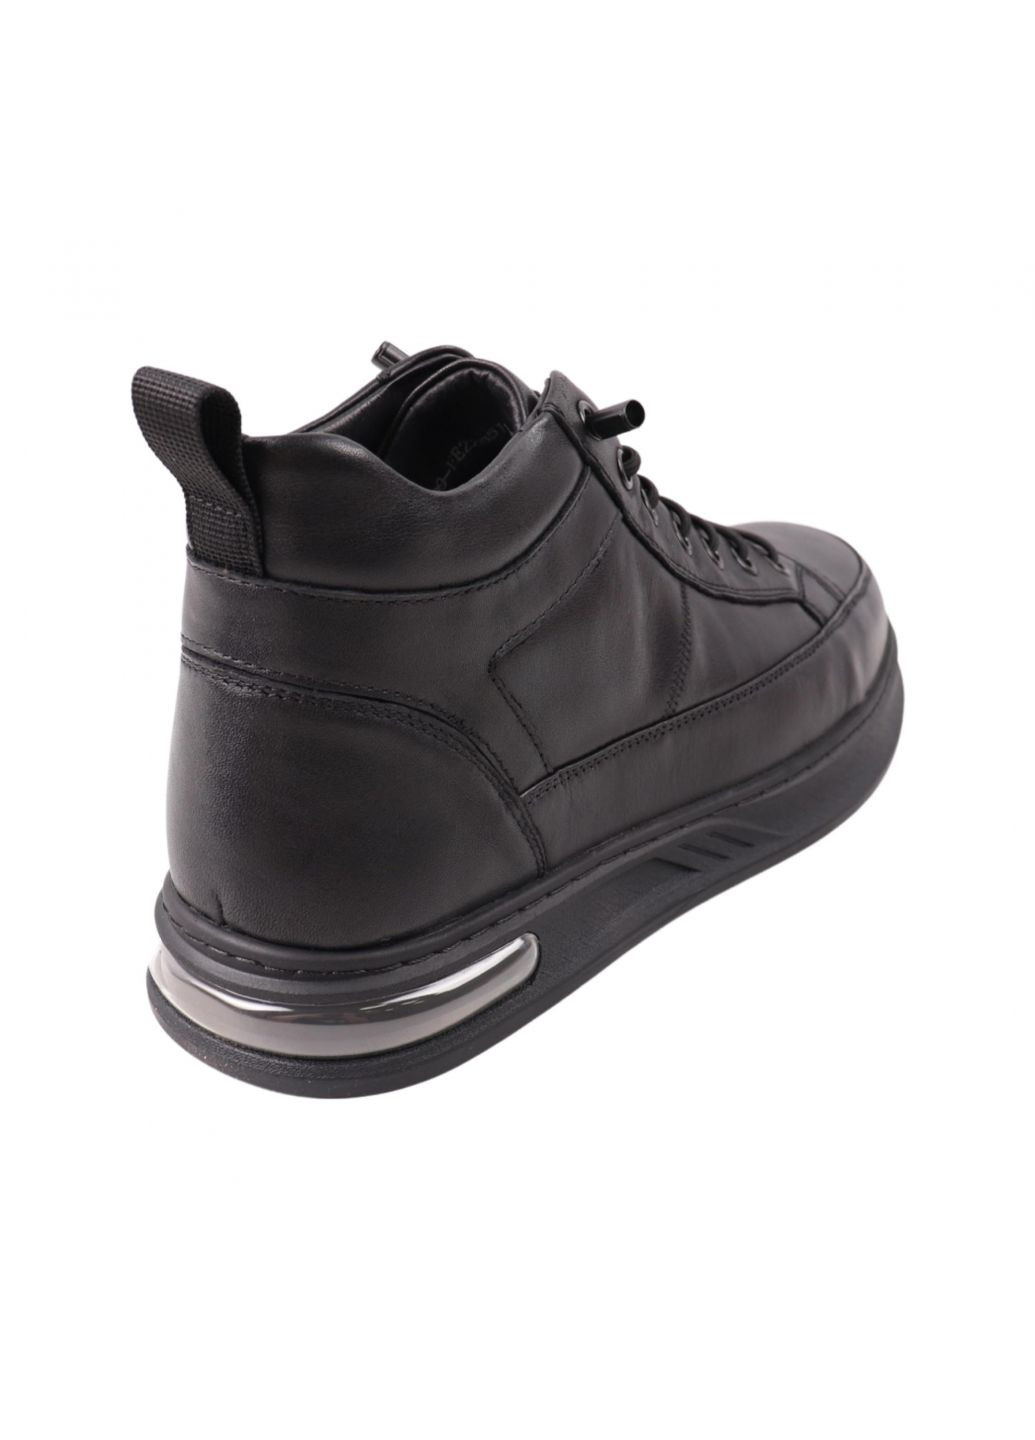 Черные ботинки мужские черные натуральная кожа Clemento